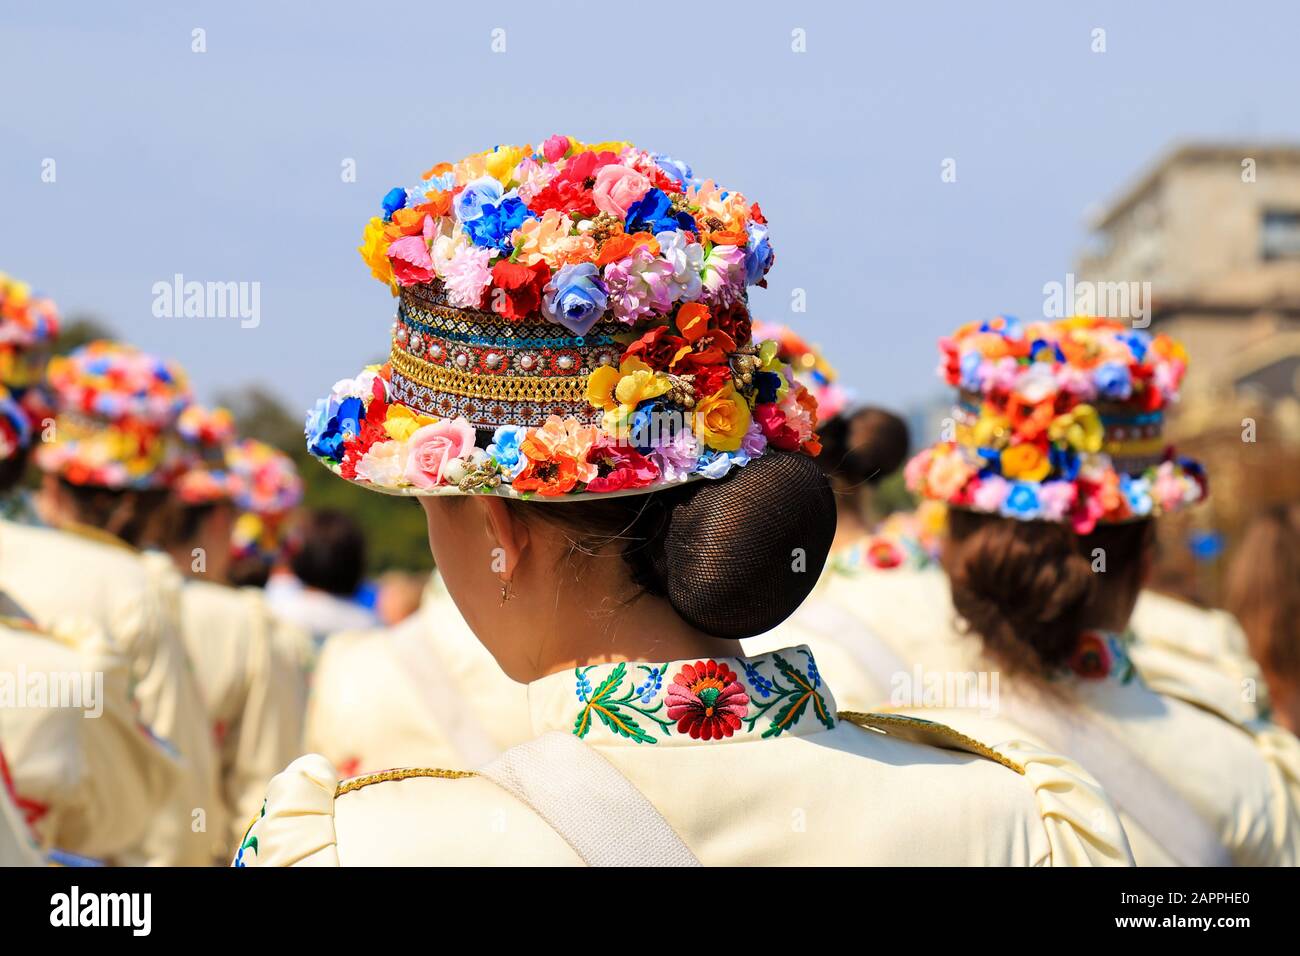 Les filles dans des chapeaux romantiques branchés avec des fleurs colorées  se tiennent au festival de la ville, le carnaval. Costumes de style  national ukrainien. Dnipro ville, Ukraine Photo Stock - Alamy